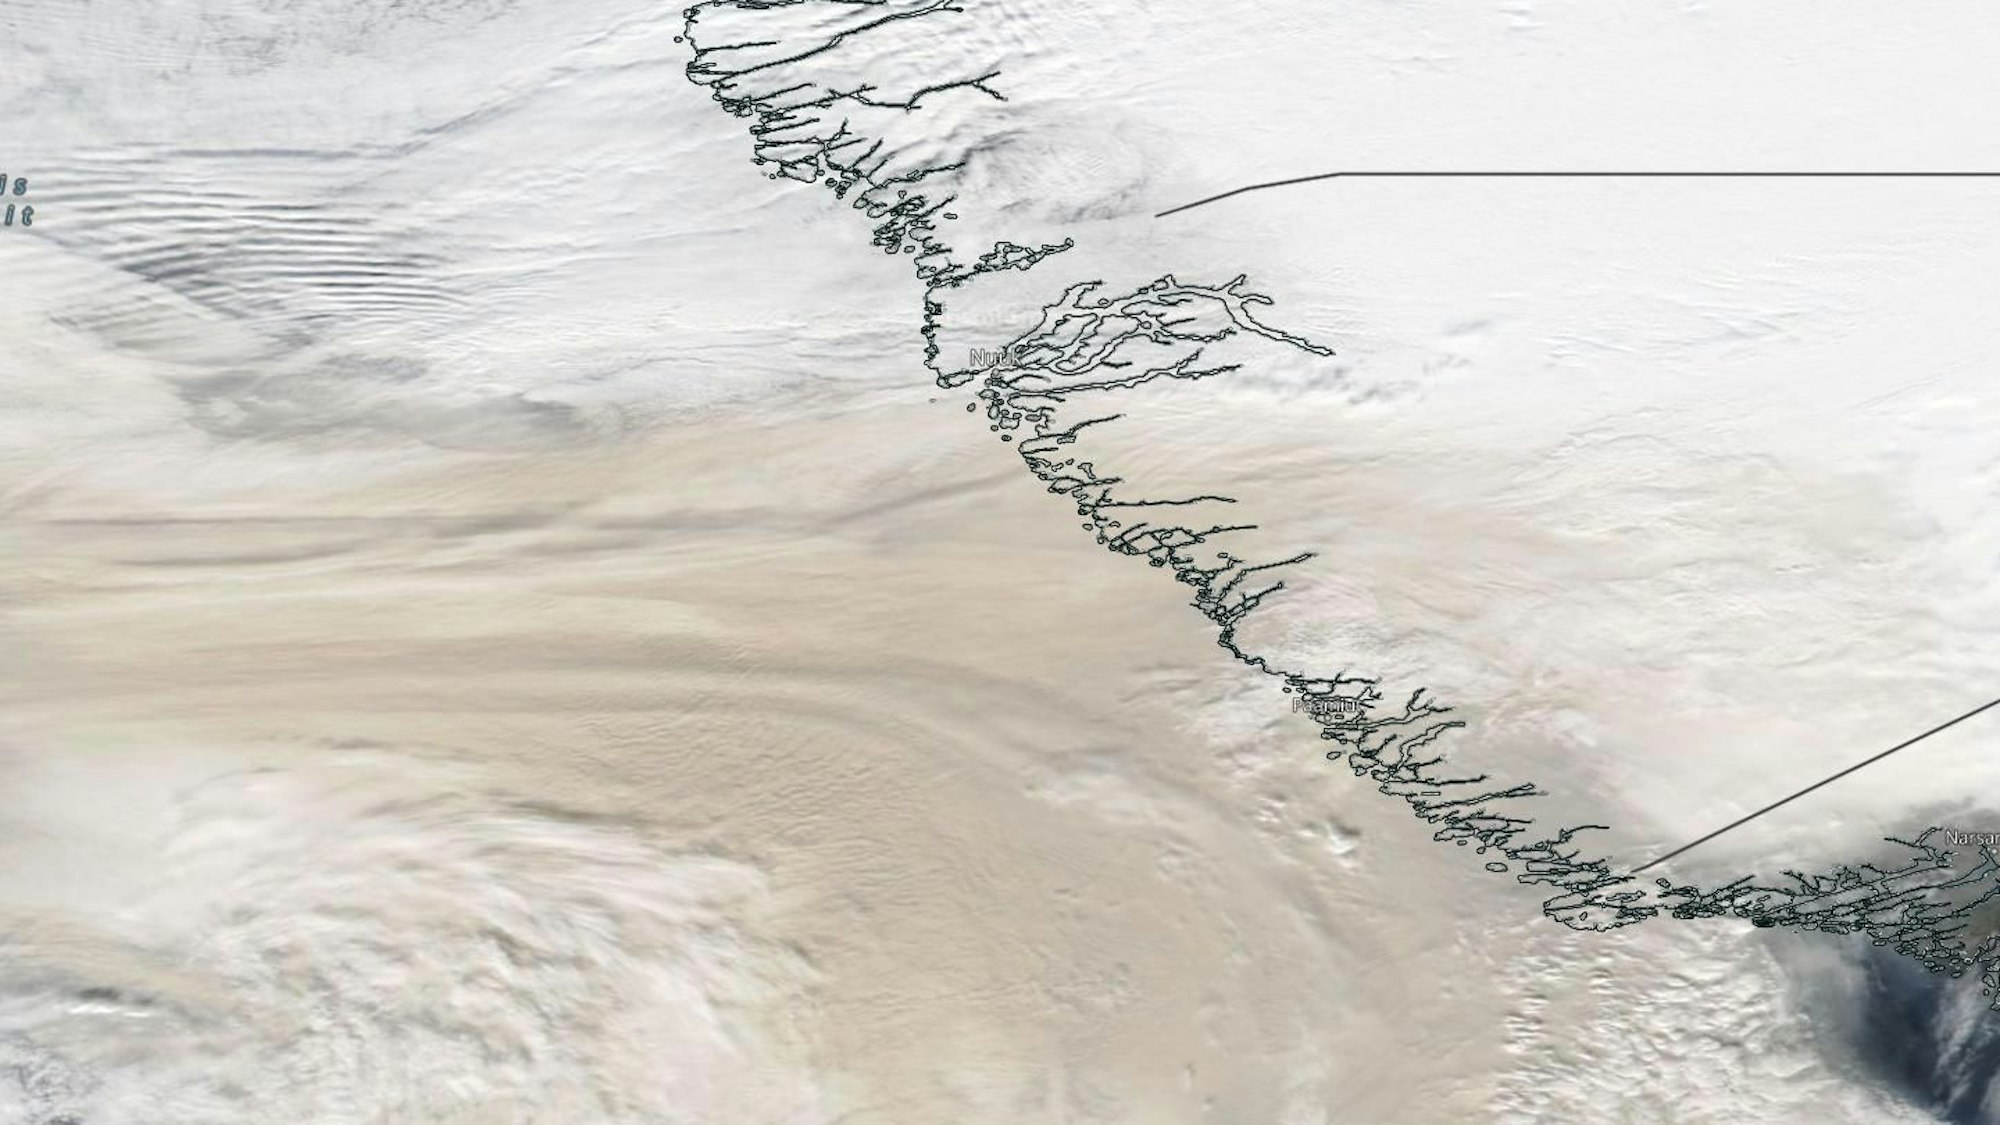 Dichte Rauchwolken sind auf einer Satellitenaufnahme der US-Weltraumbehörde NASA zu sehen. Der Rauch zieht aus den kanadischen Bundesstaaten British Columbia und Alberta über die Northwest Territories in Richtung Grönland, wo die Hauptstadt Nuuk in wenigen Minuten verdunkelt wurde.